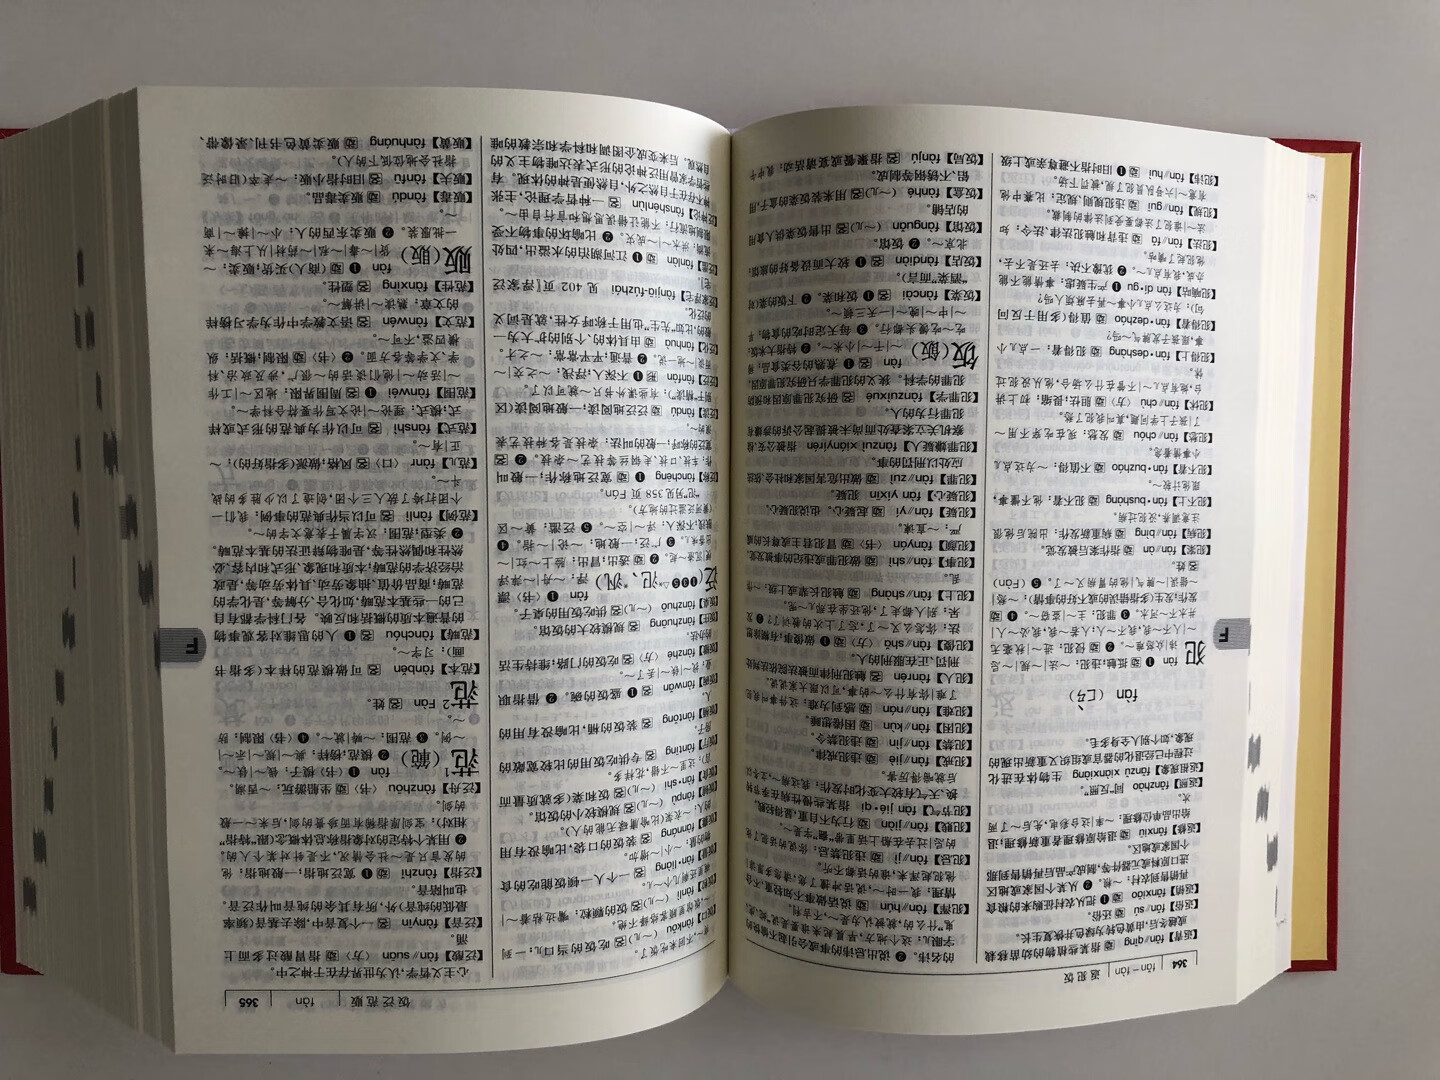 汉语词典当中一定还是商务印书馆的。第七版还是不错的，工具书还是相信权威的。